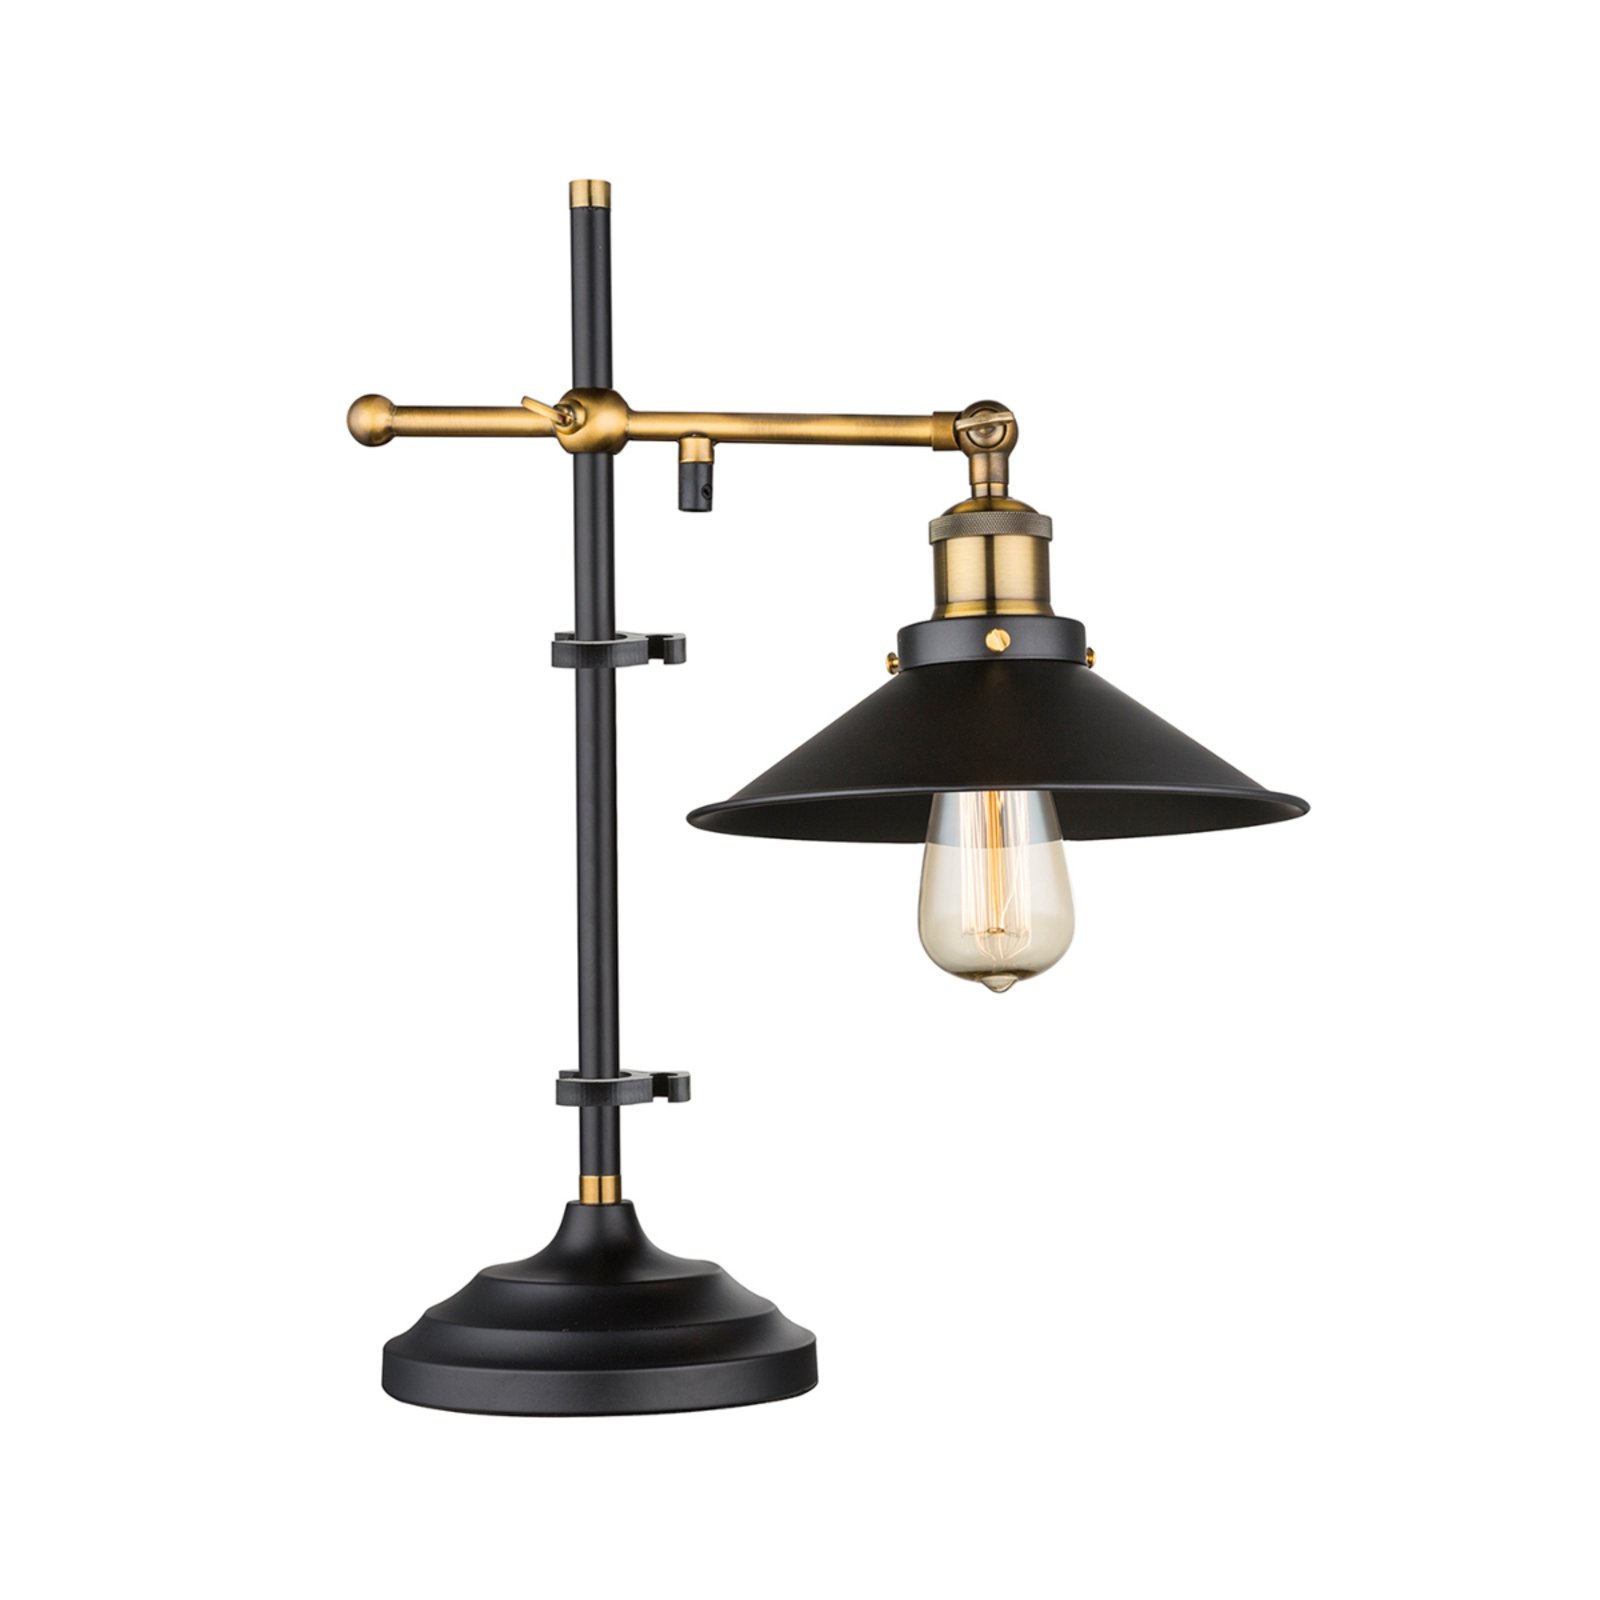 Adjustable table lamp Viktor